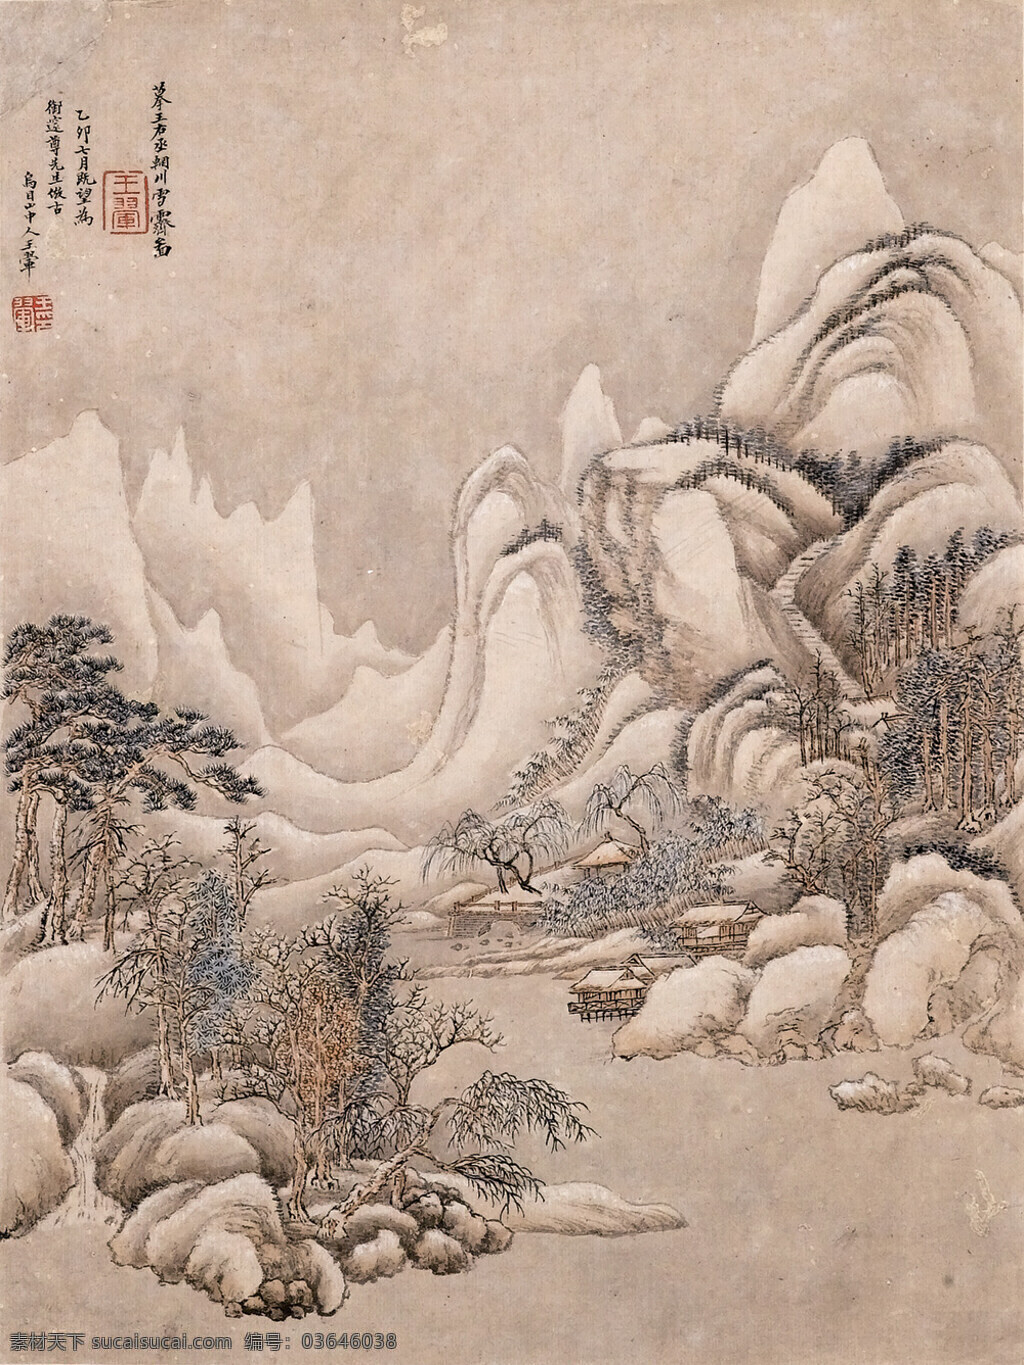 辋川雪霁 王翚 辋川 雪霁 绘画书法 文化艺术